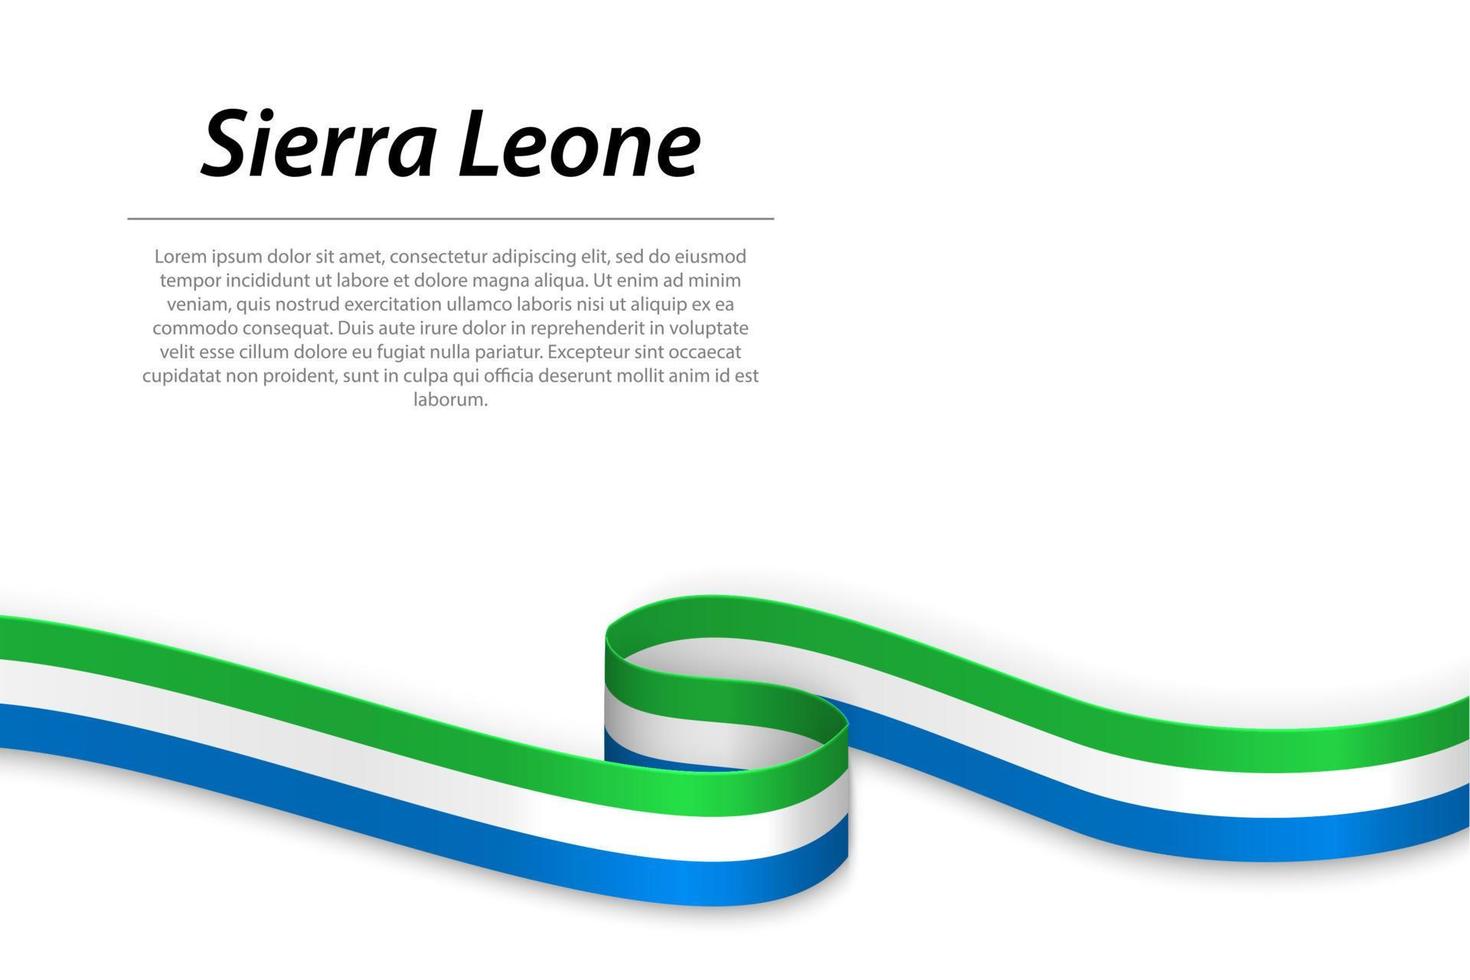 schwenkendes band oder banner mit flagge von sierra leone vektor